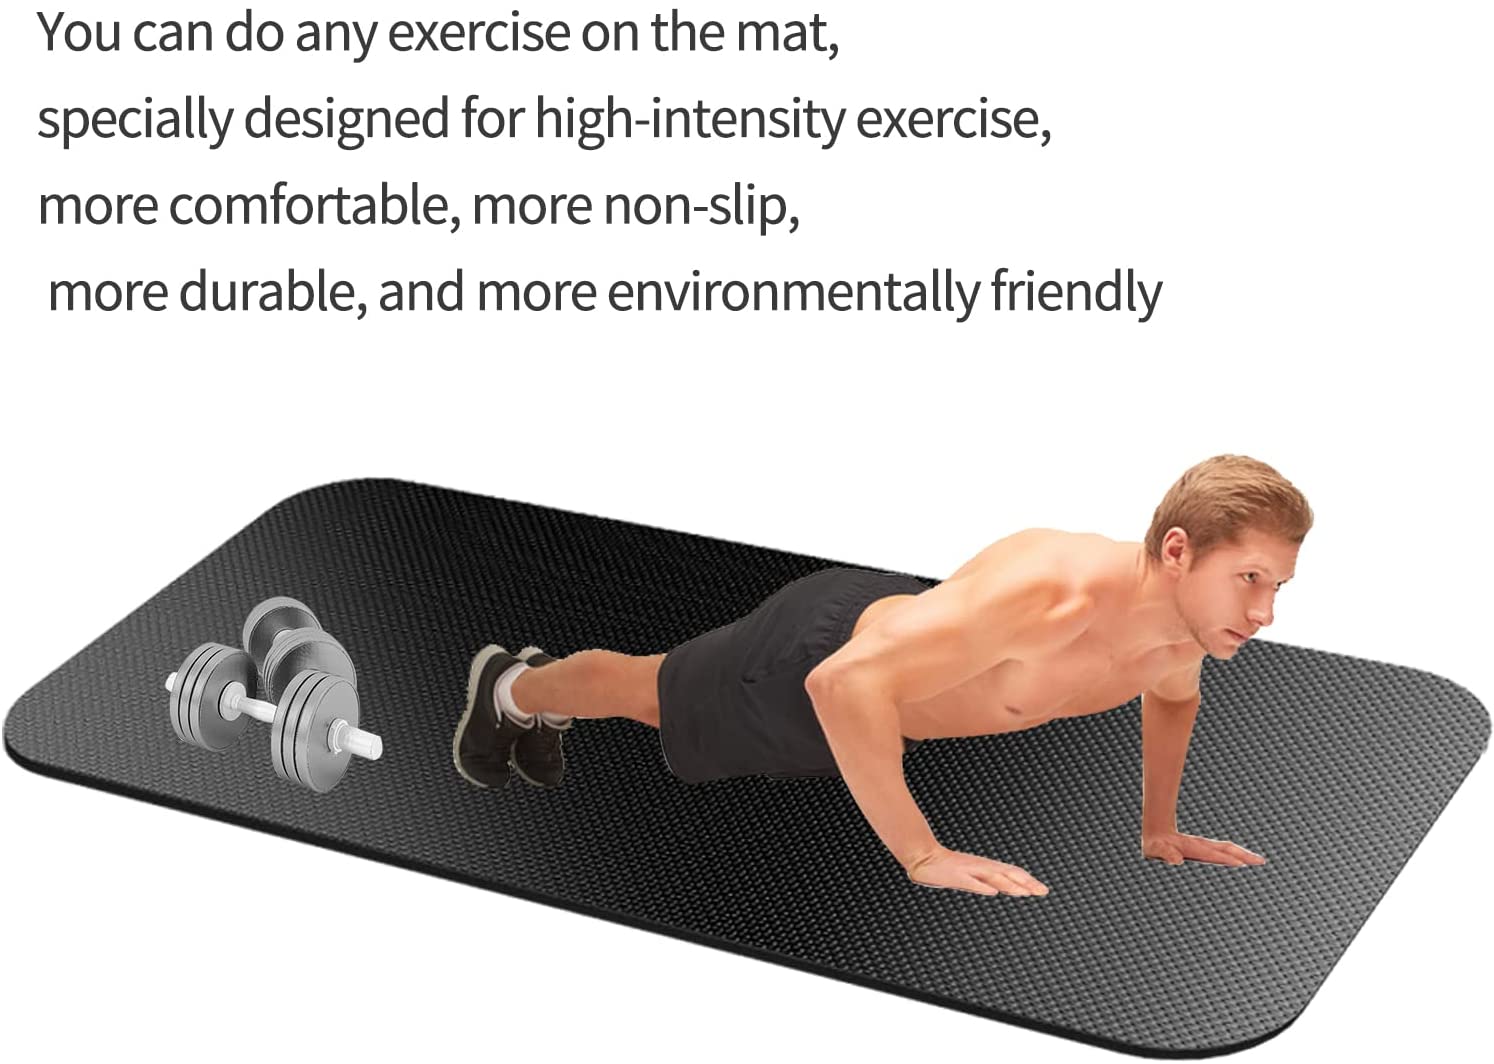 Exercise Equipment Mat - Treadmill Mat, Exercise Bike Mat, Fitness Mat, Elliptical